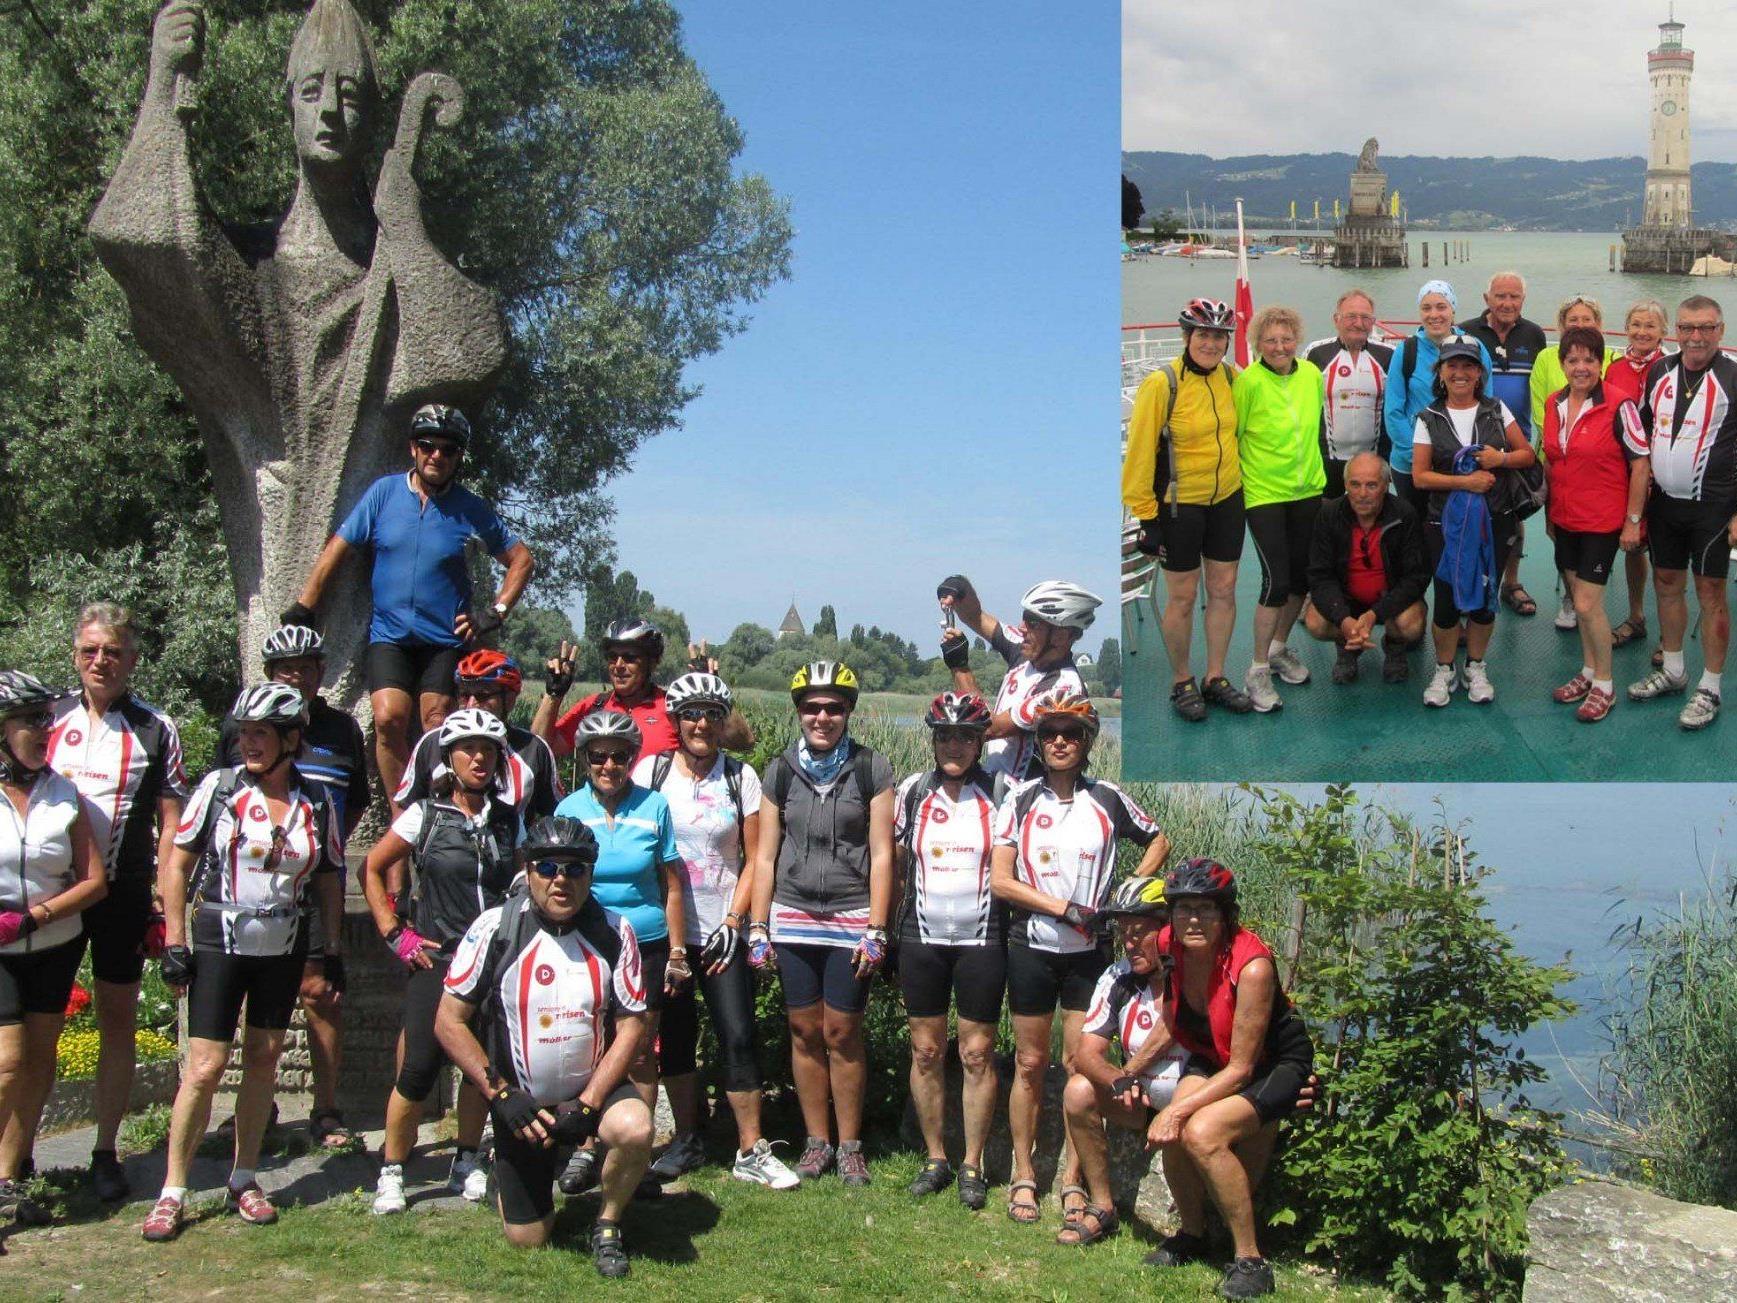 Team per pedales beim Inselhüpfen am Bodensee